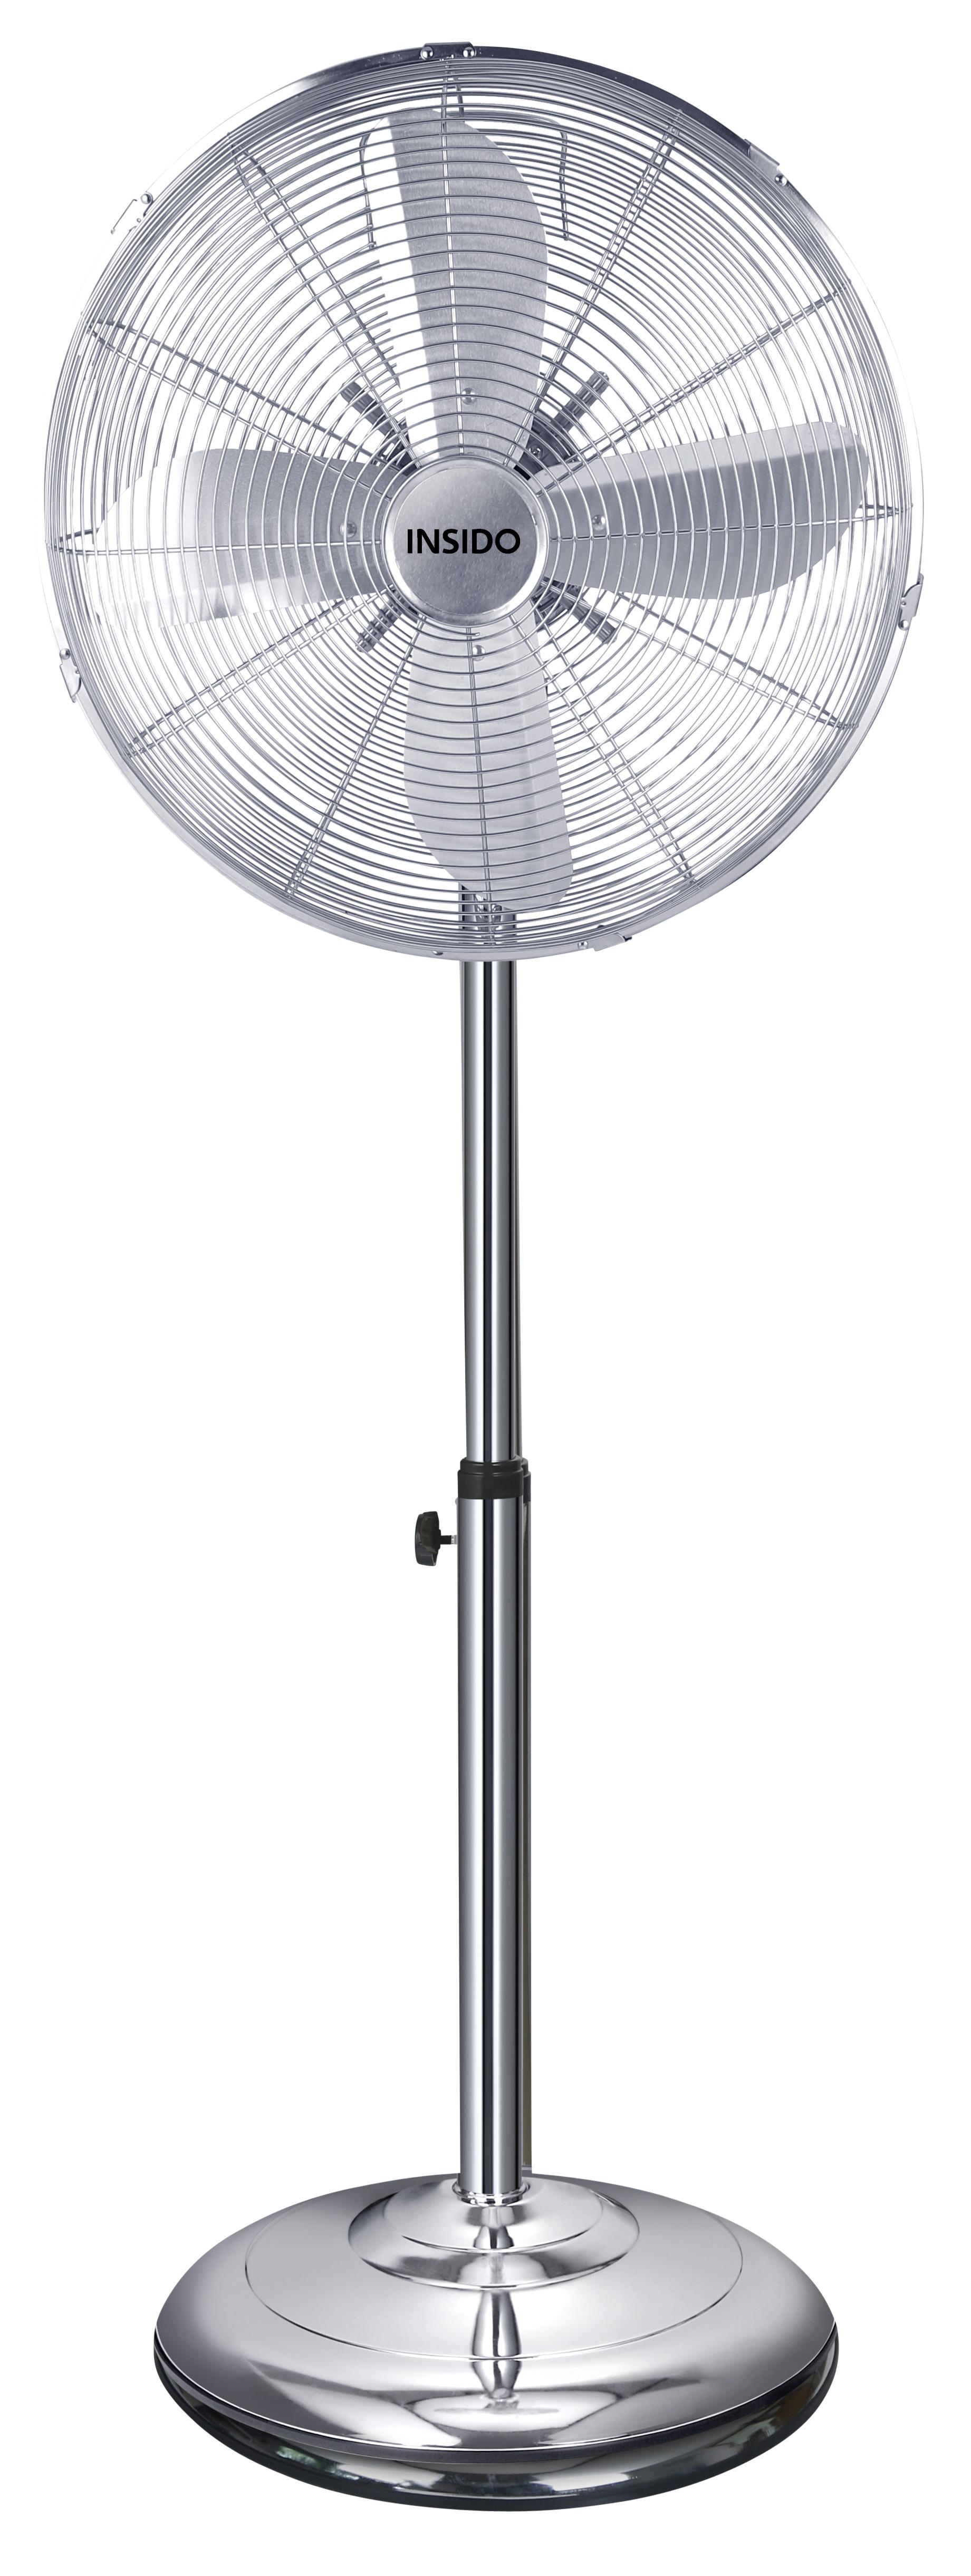 Ventilator Podni Herwig - boje kroma, metal (45/127cm) - Insido